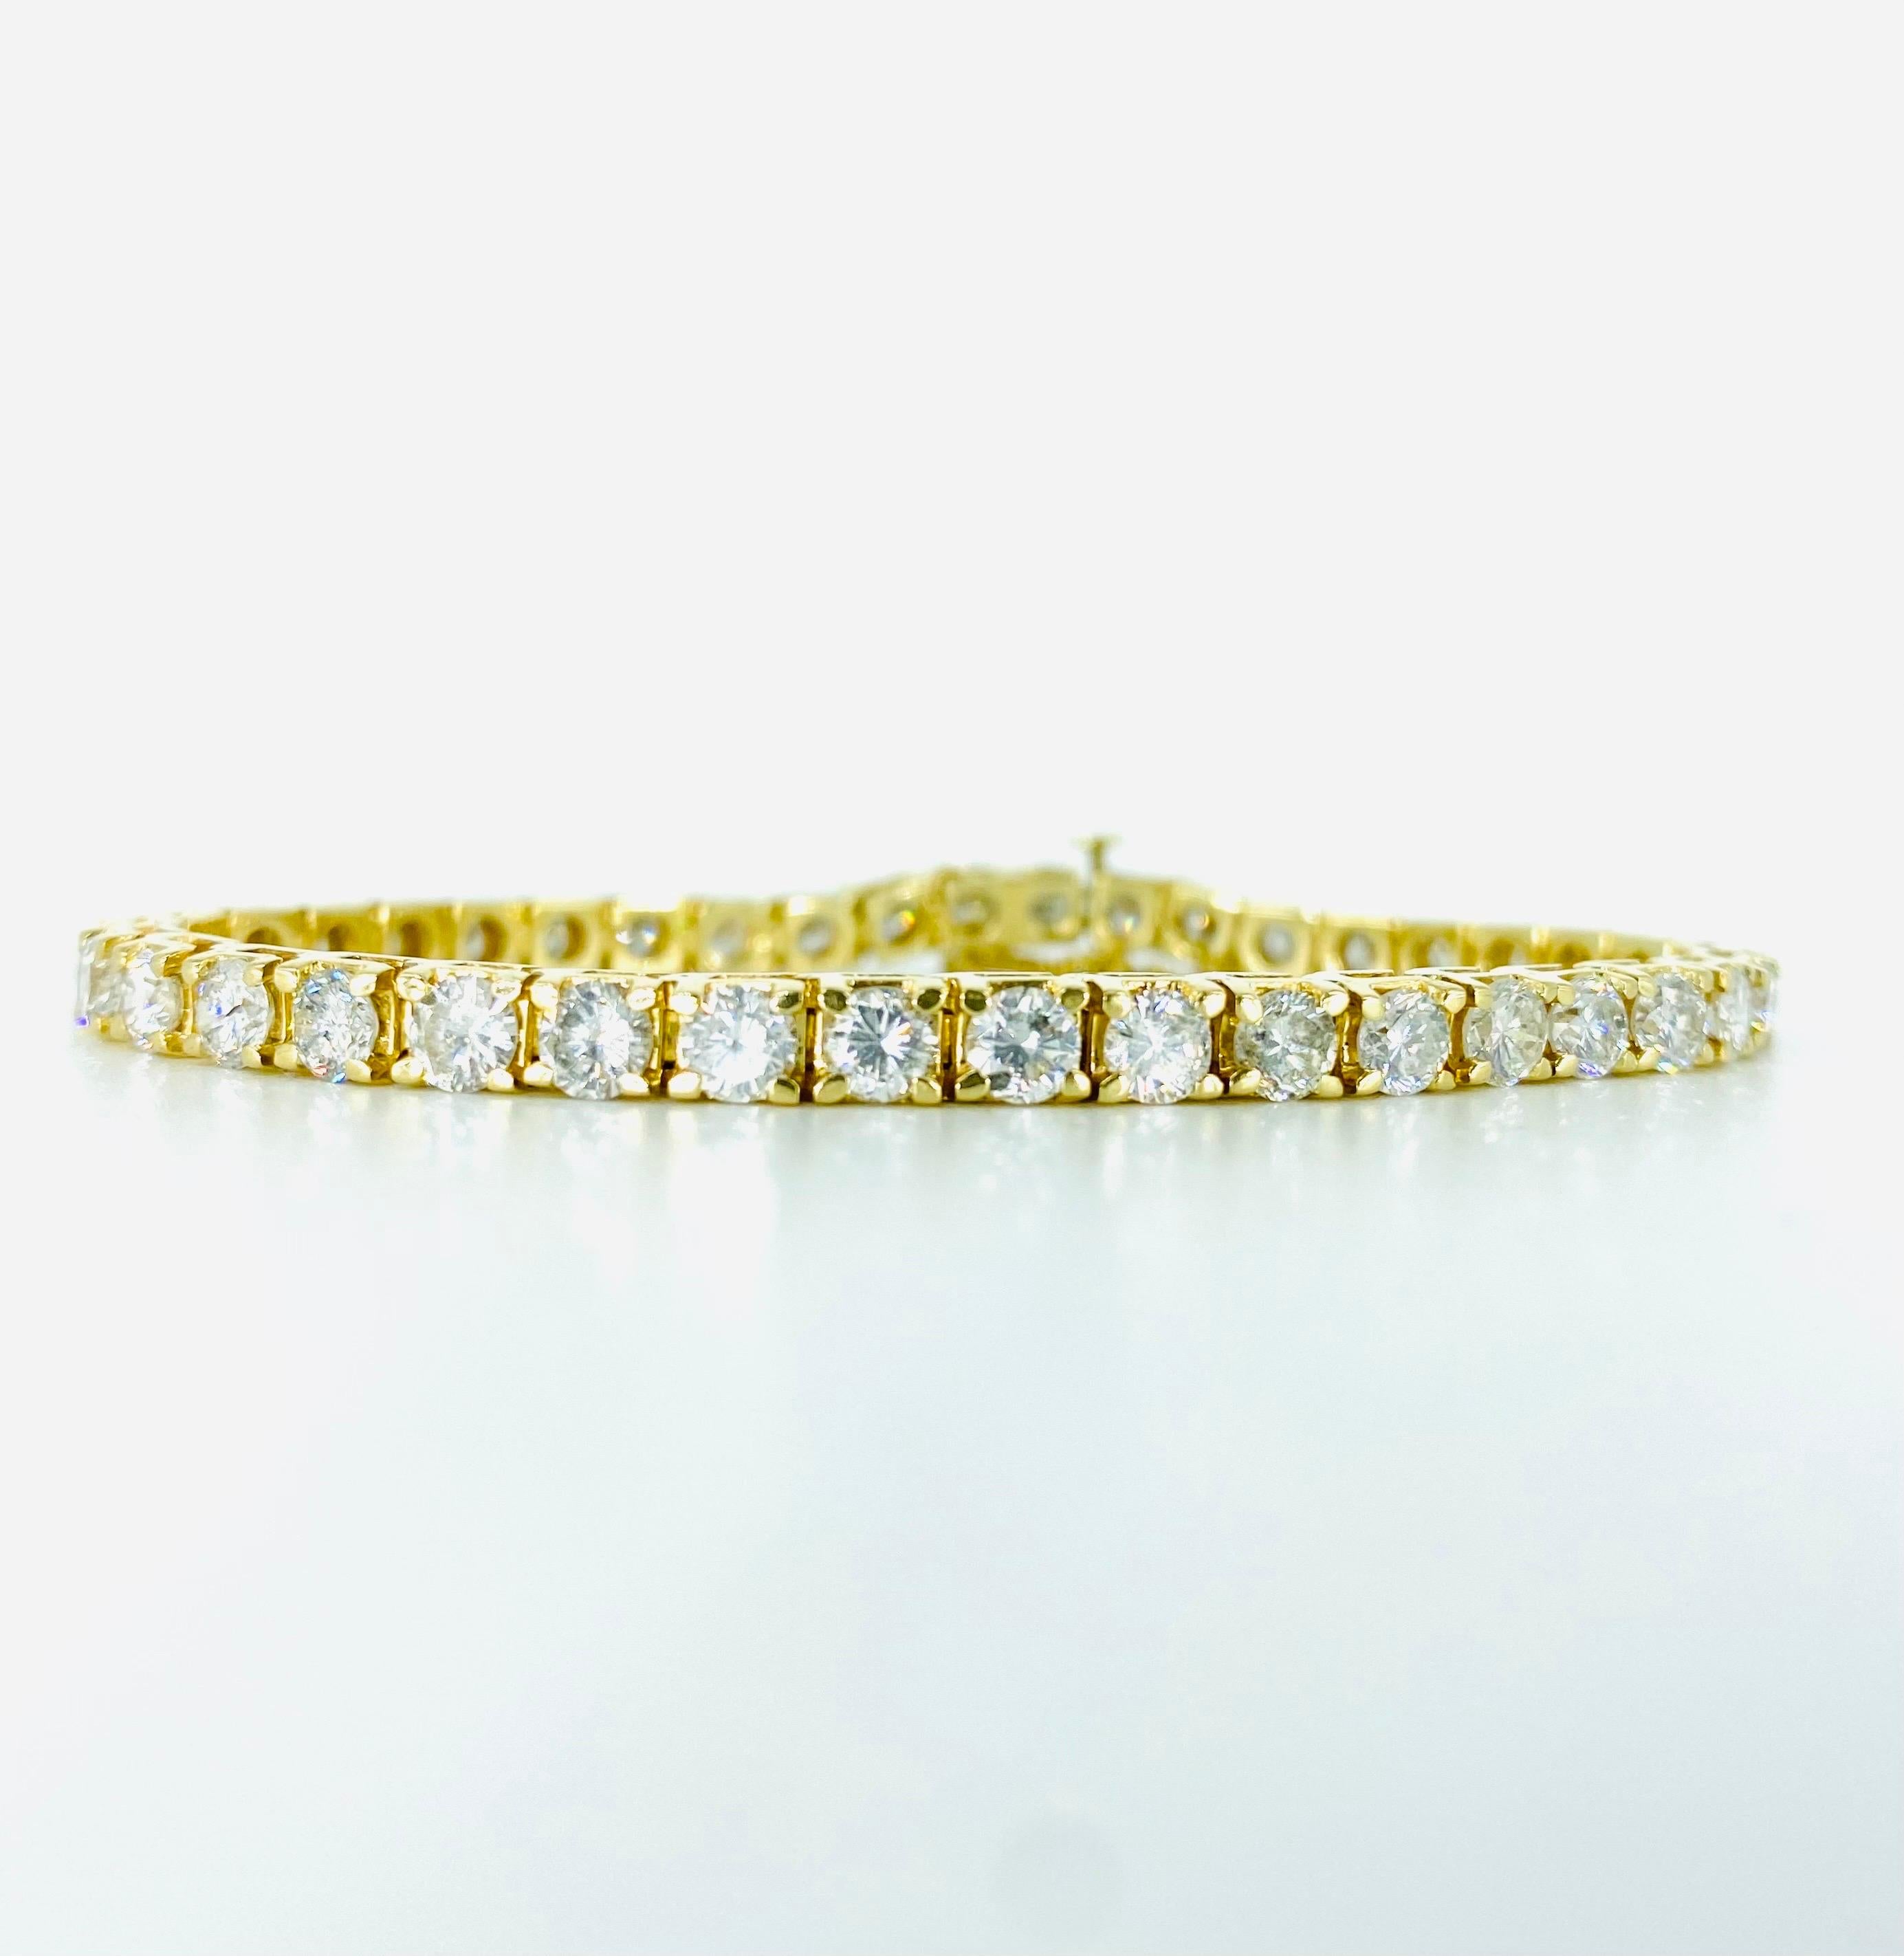 Vintage 11 Carat Diamonds Tennis Bracelet 14k Gold.
Magnifique bracelet de tennis en diamant comportant 39 diamants ronds de taille brillant pesant environ 0,28 carat chacun. Le bracelet pèse 16.7 grammes d'or massif 14 carats et mesure 7 pouces de